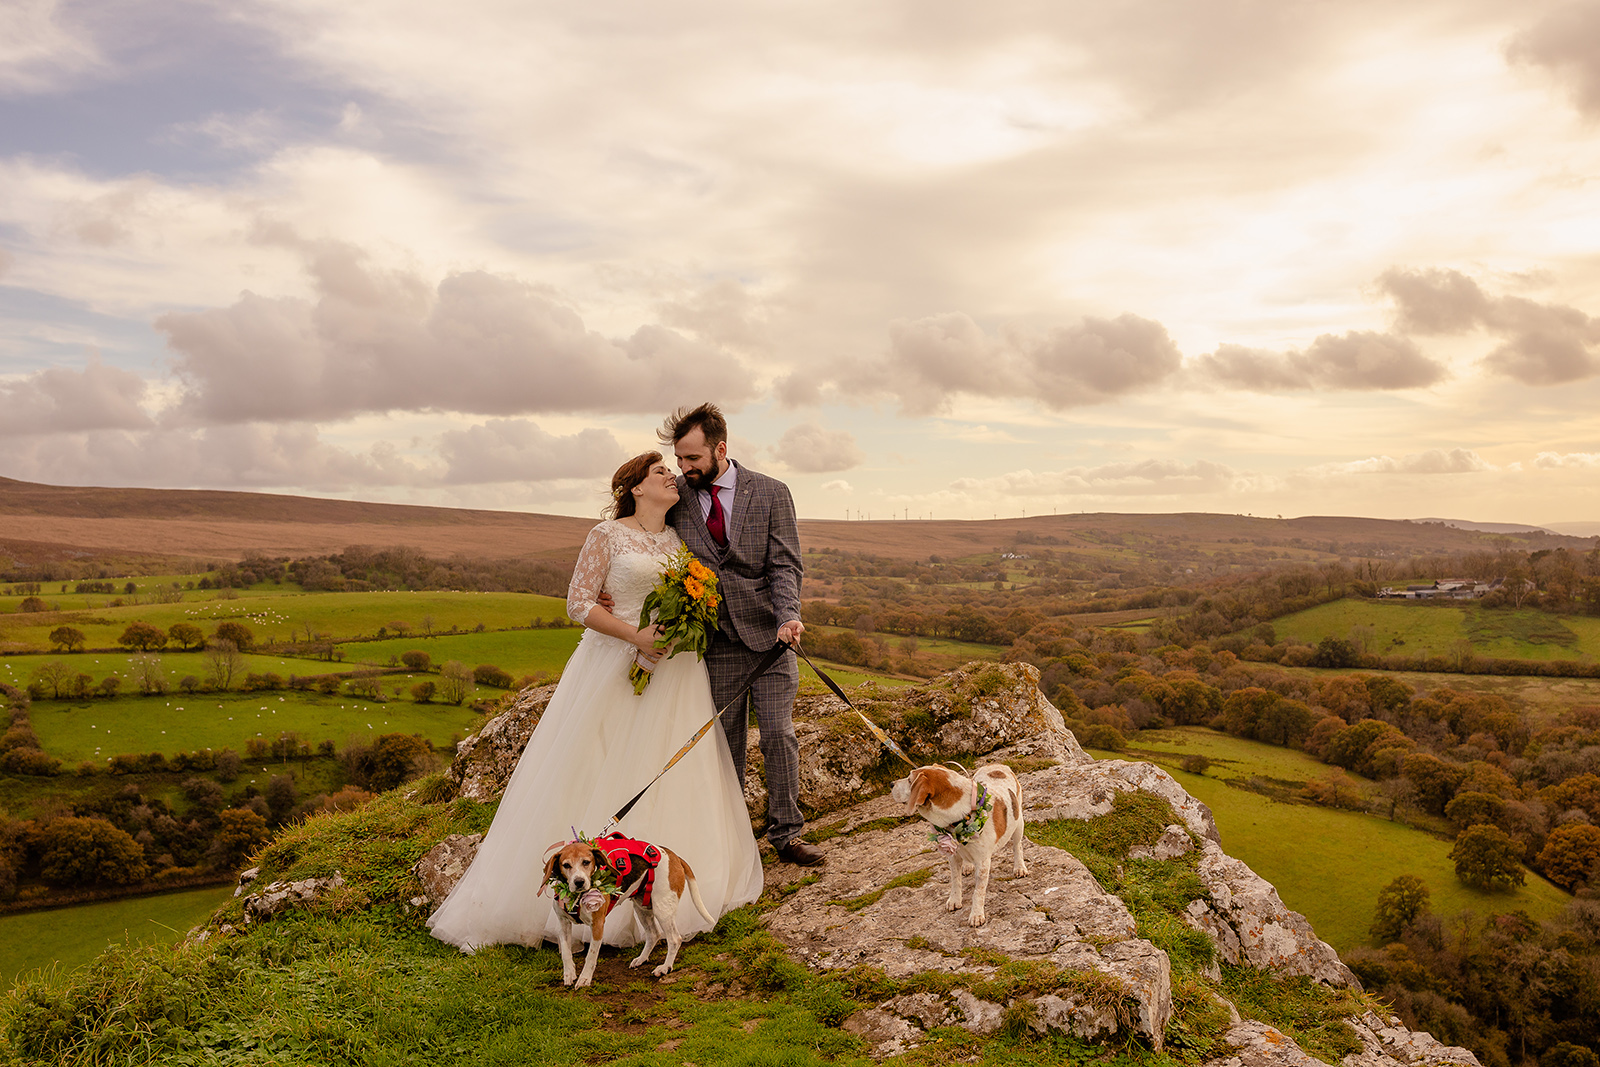 Carreg Cennen Castle and Farm wedding